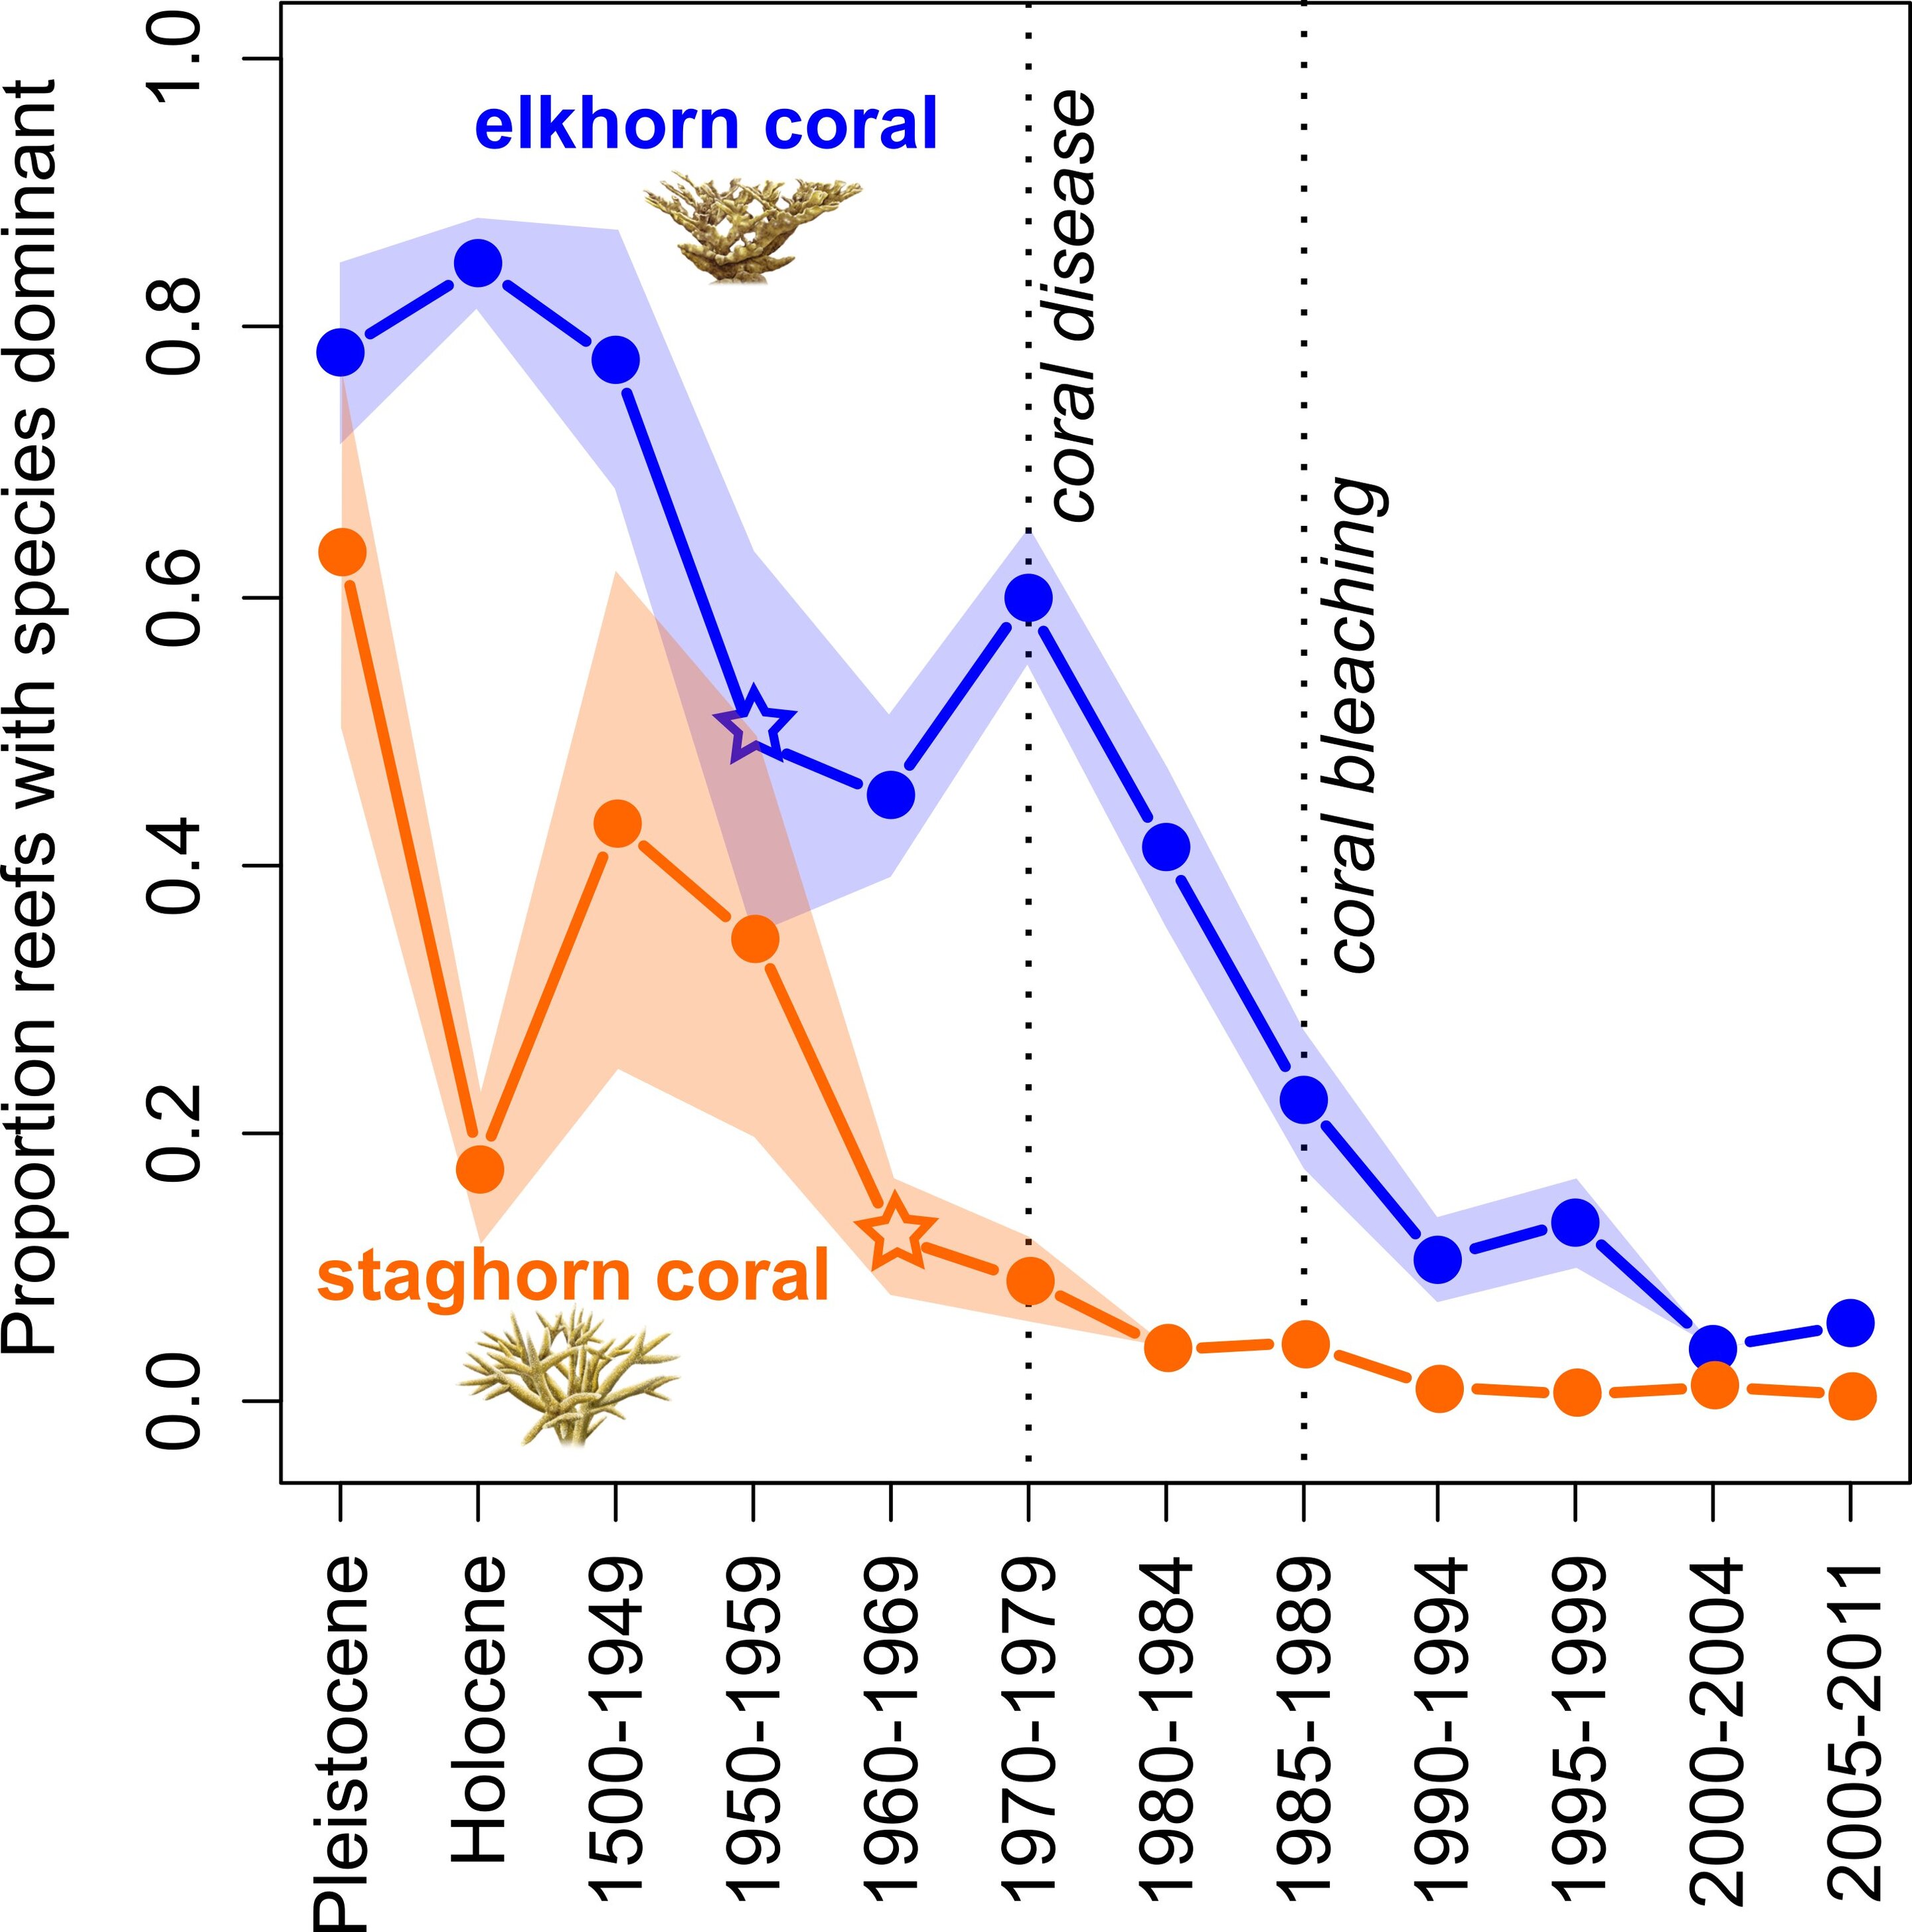 coral bleaching graph